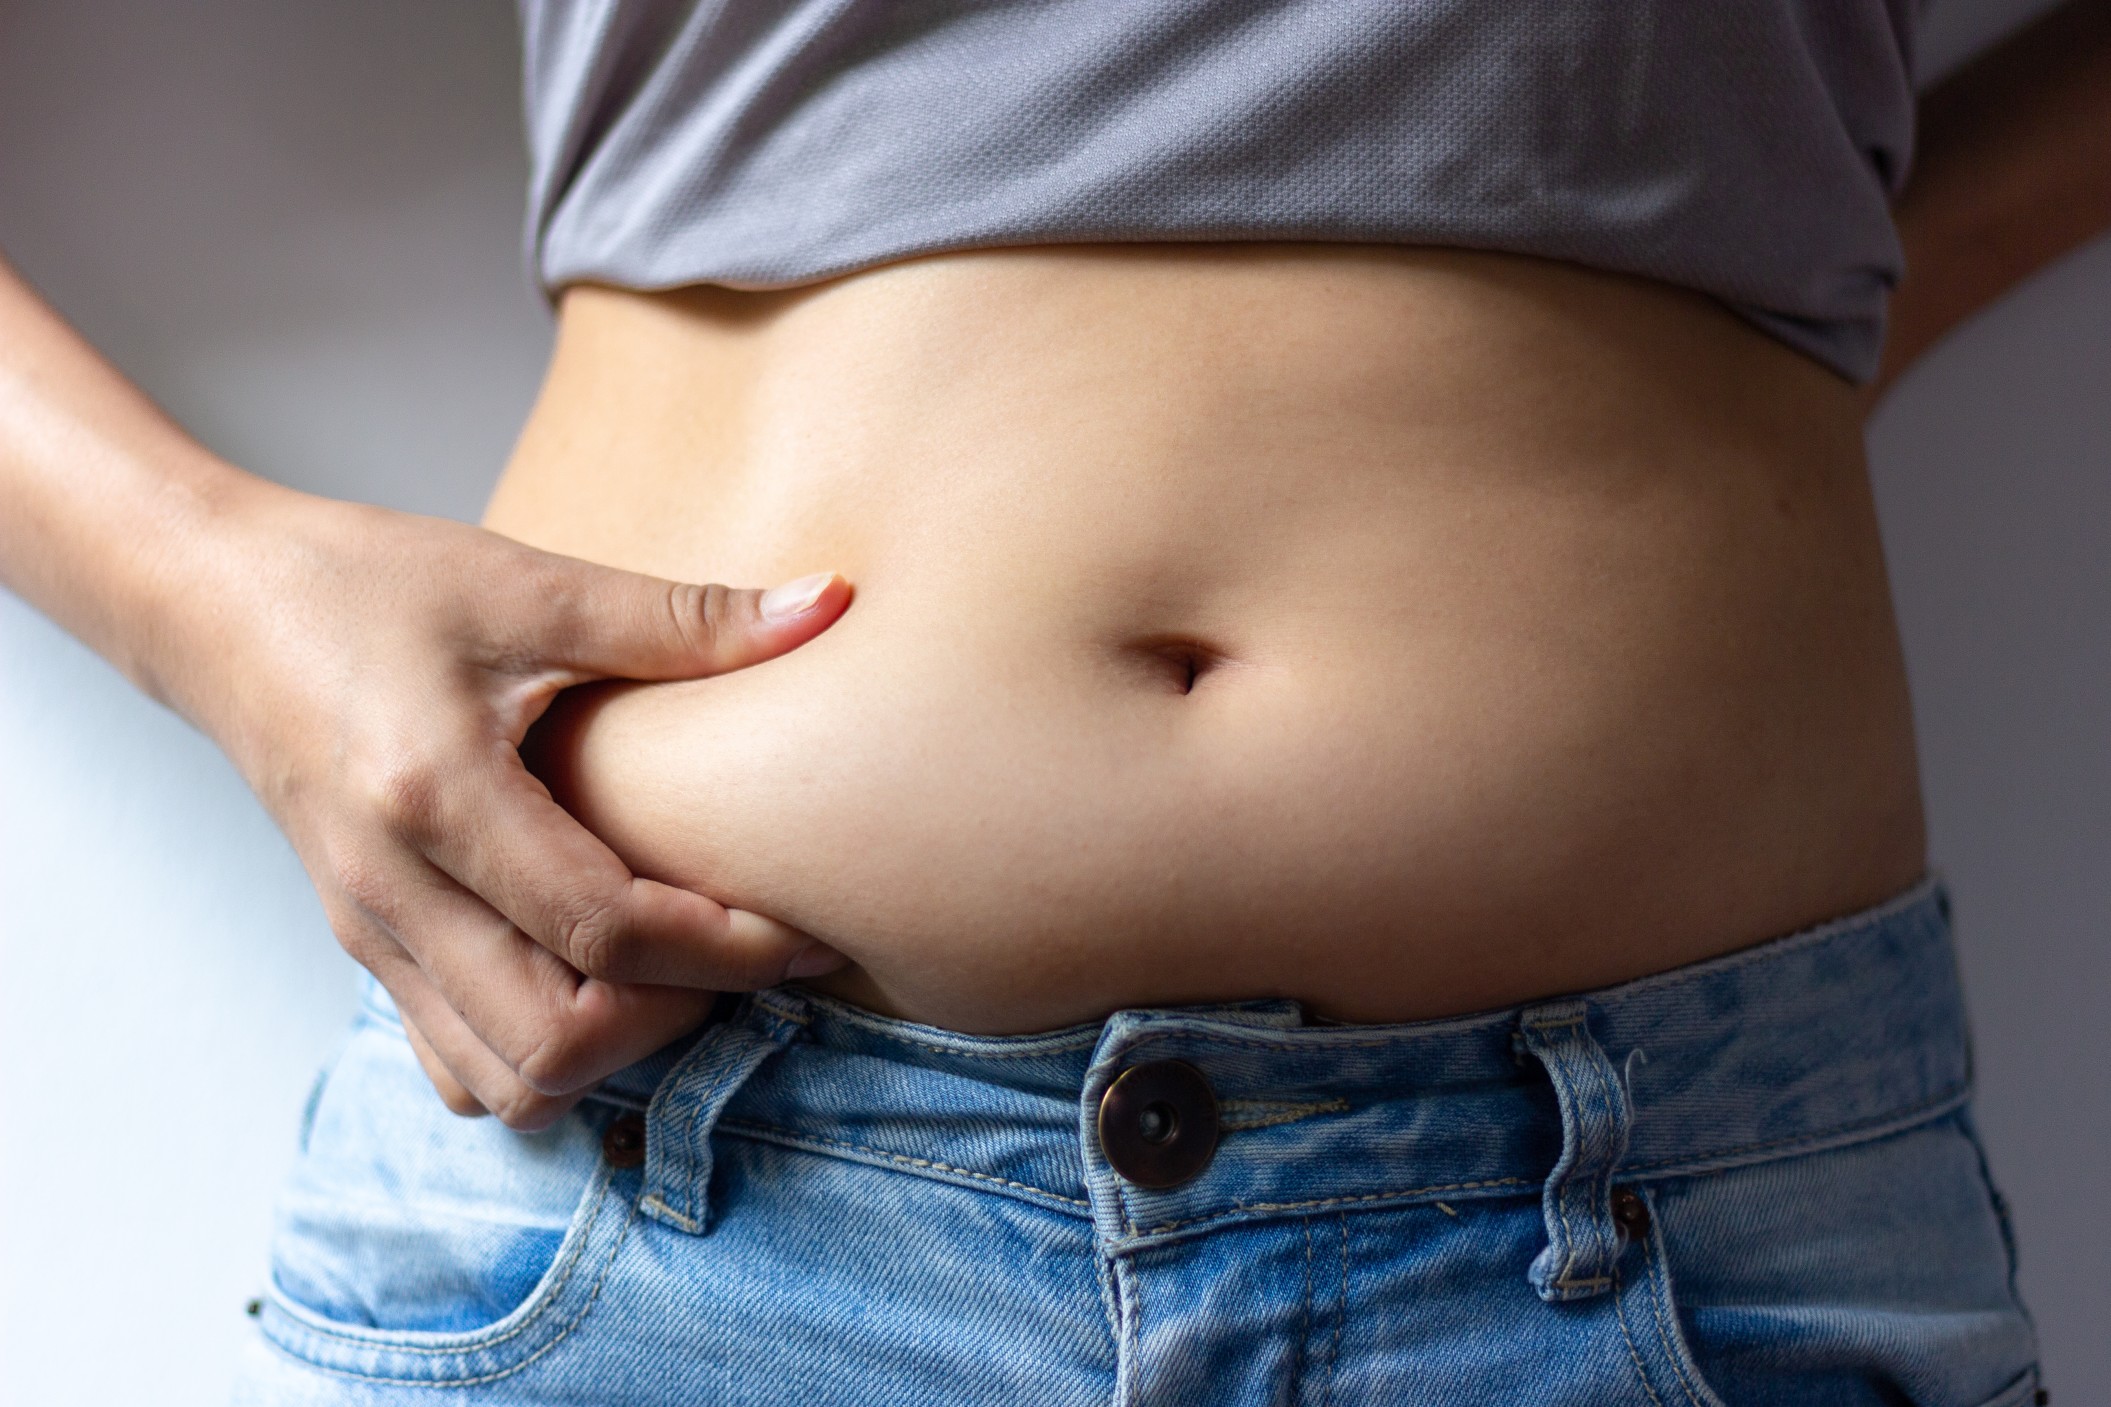 Αυξημένος ο κίνδυνος καταγμάτων στις γυναίκες με παχυσαρκία